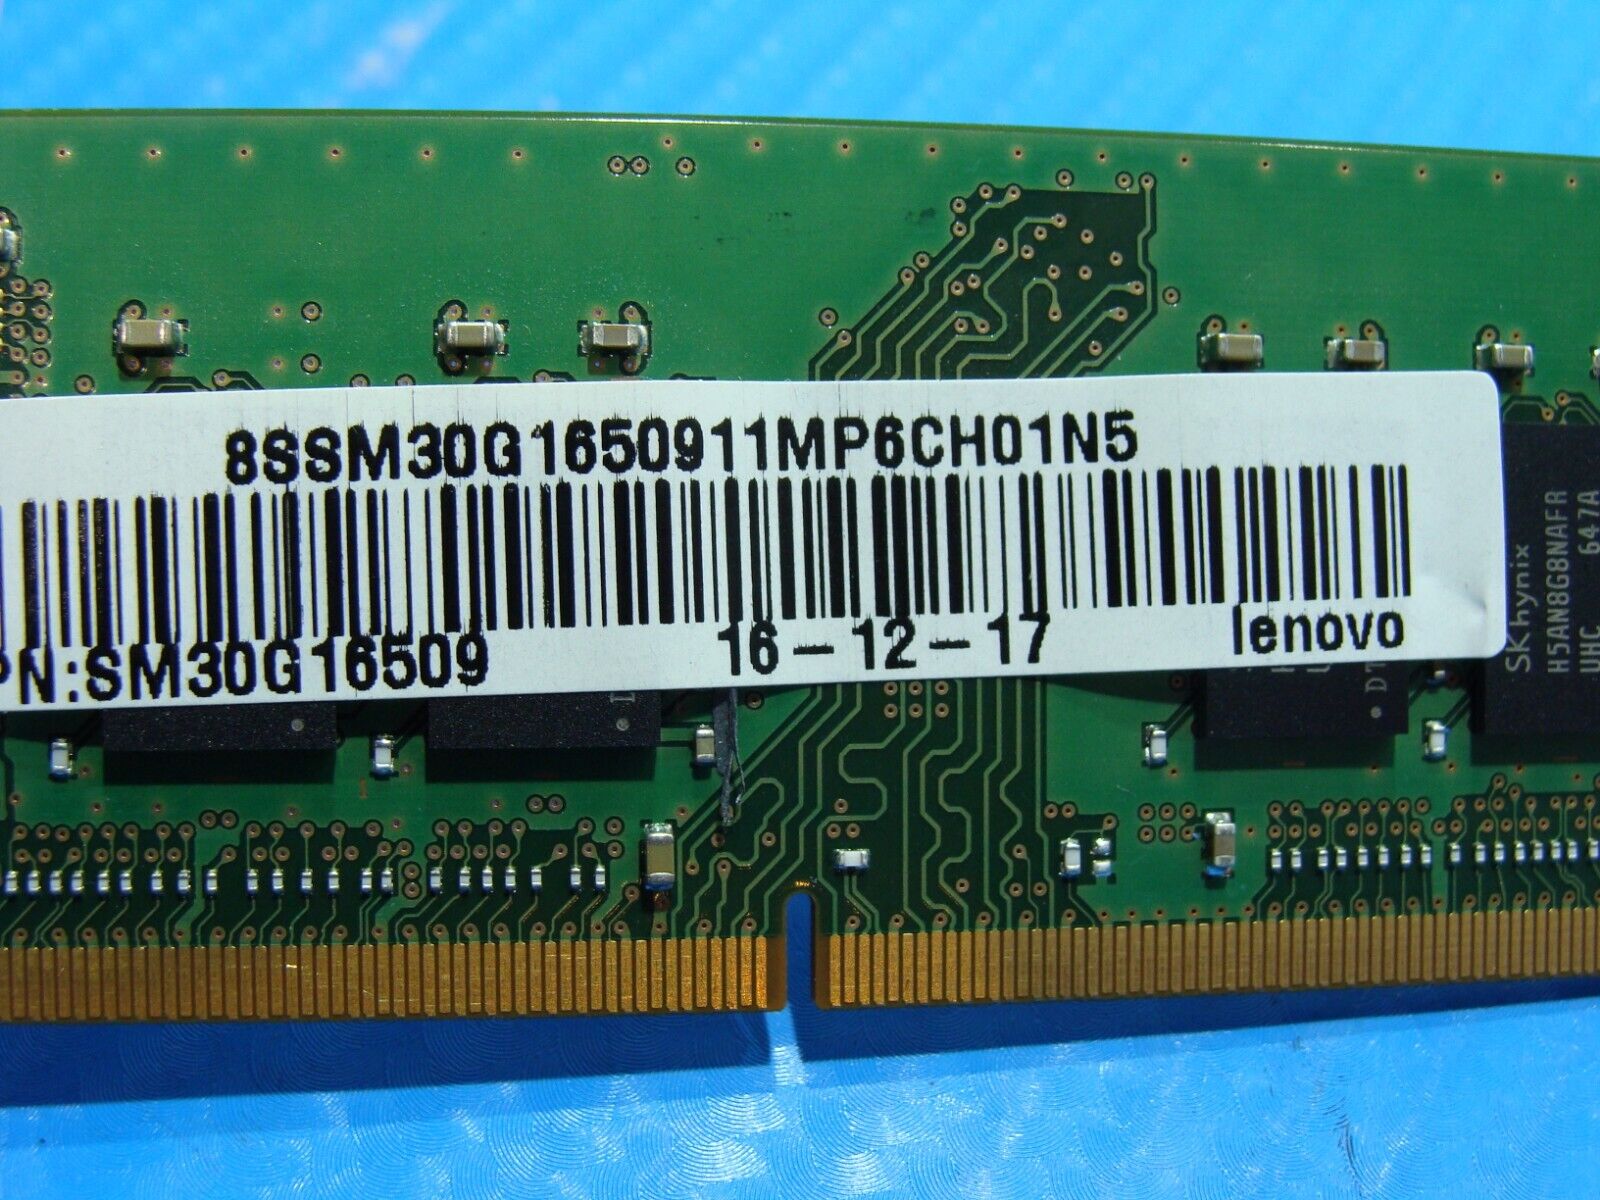 Lenovo 710-15IKB So-Dimm SK Hynix 8GB 1Rx8 Memory Ram PC4-2400T HMA81GS6AFR8N-UH